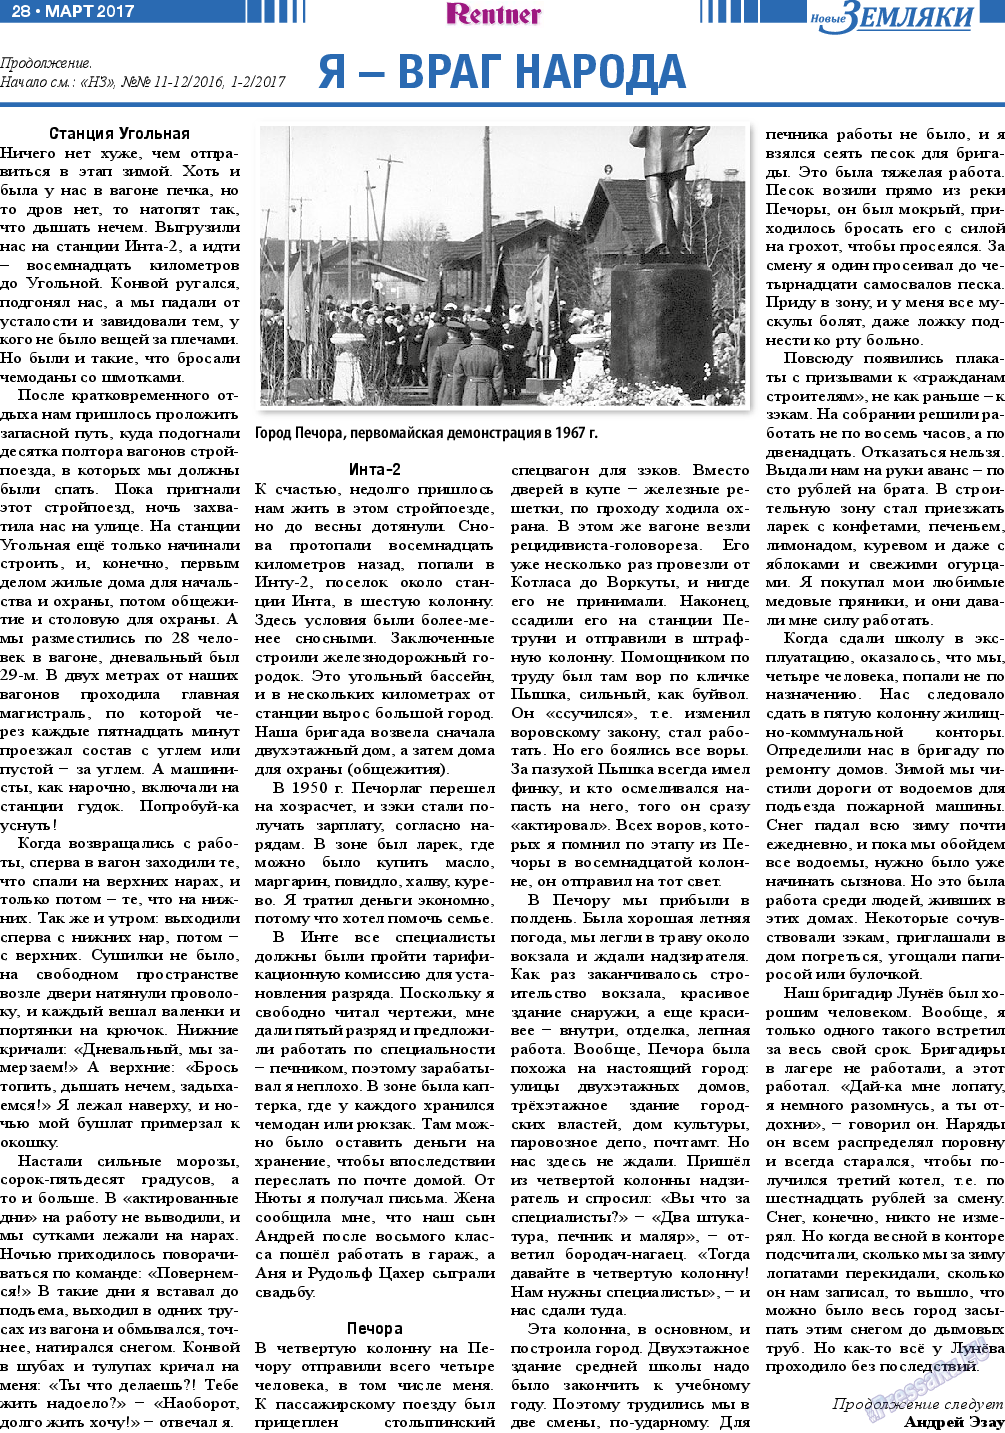 Новые Земляки, газета. 2017 №3 стр.28